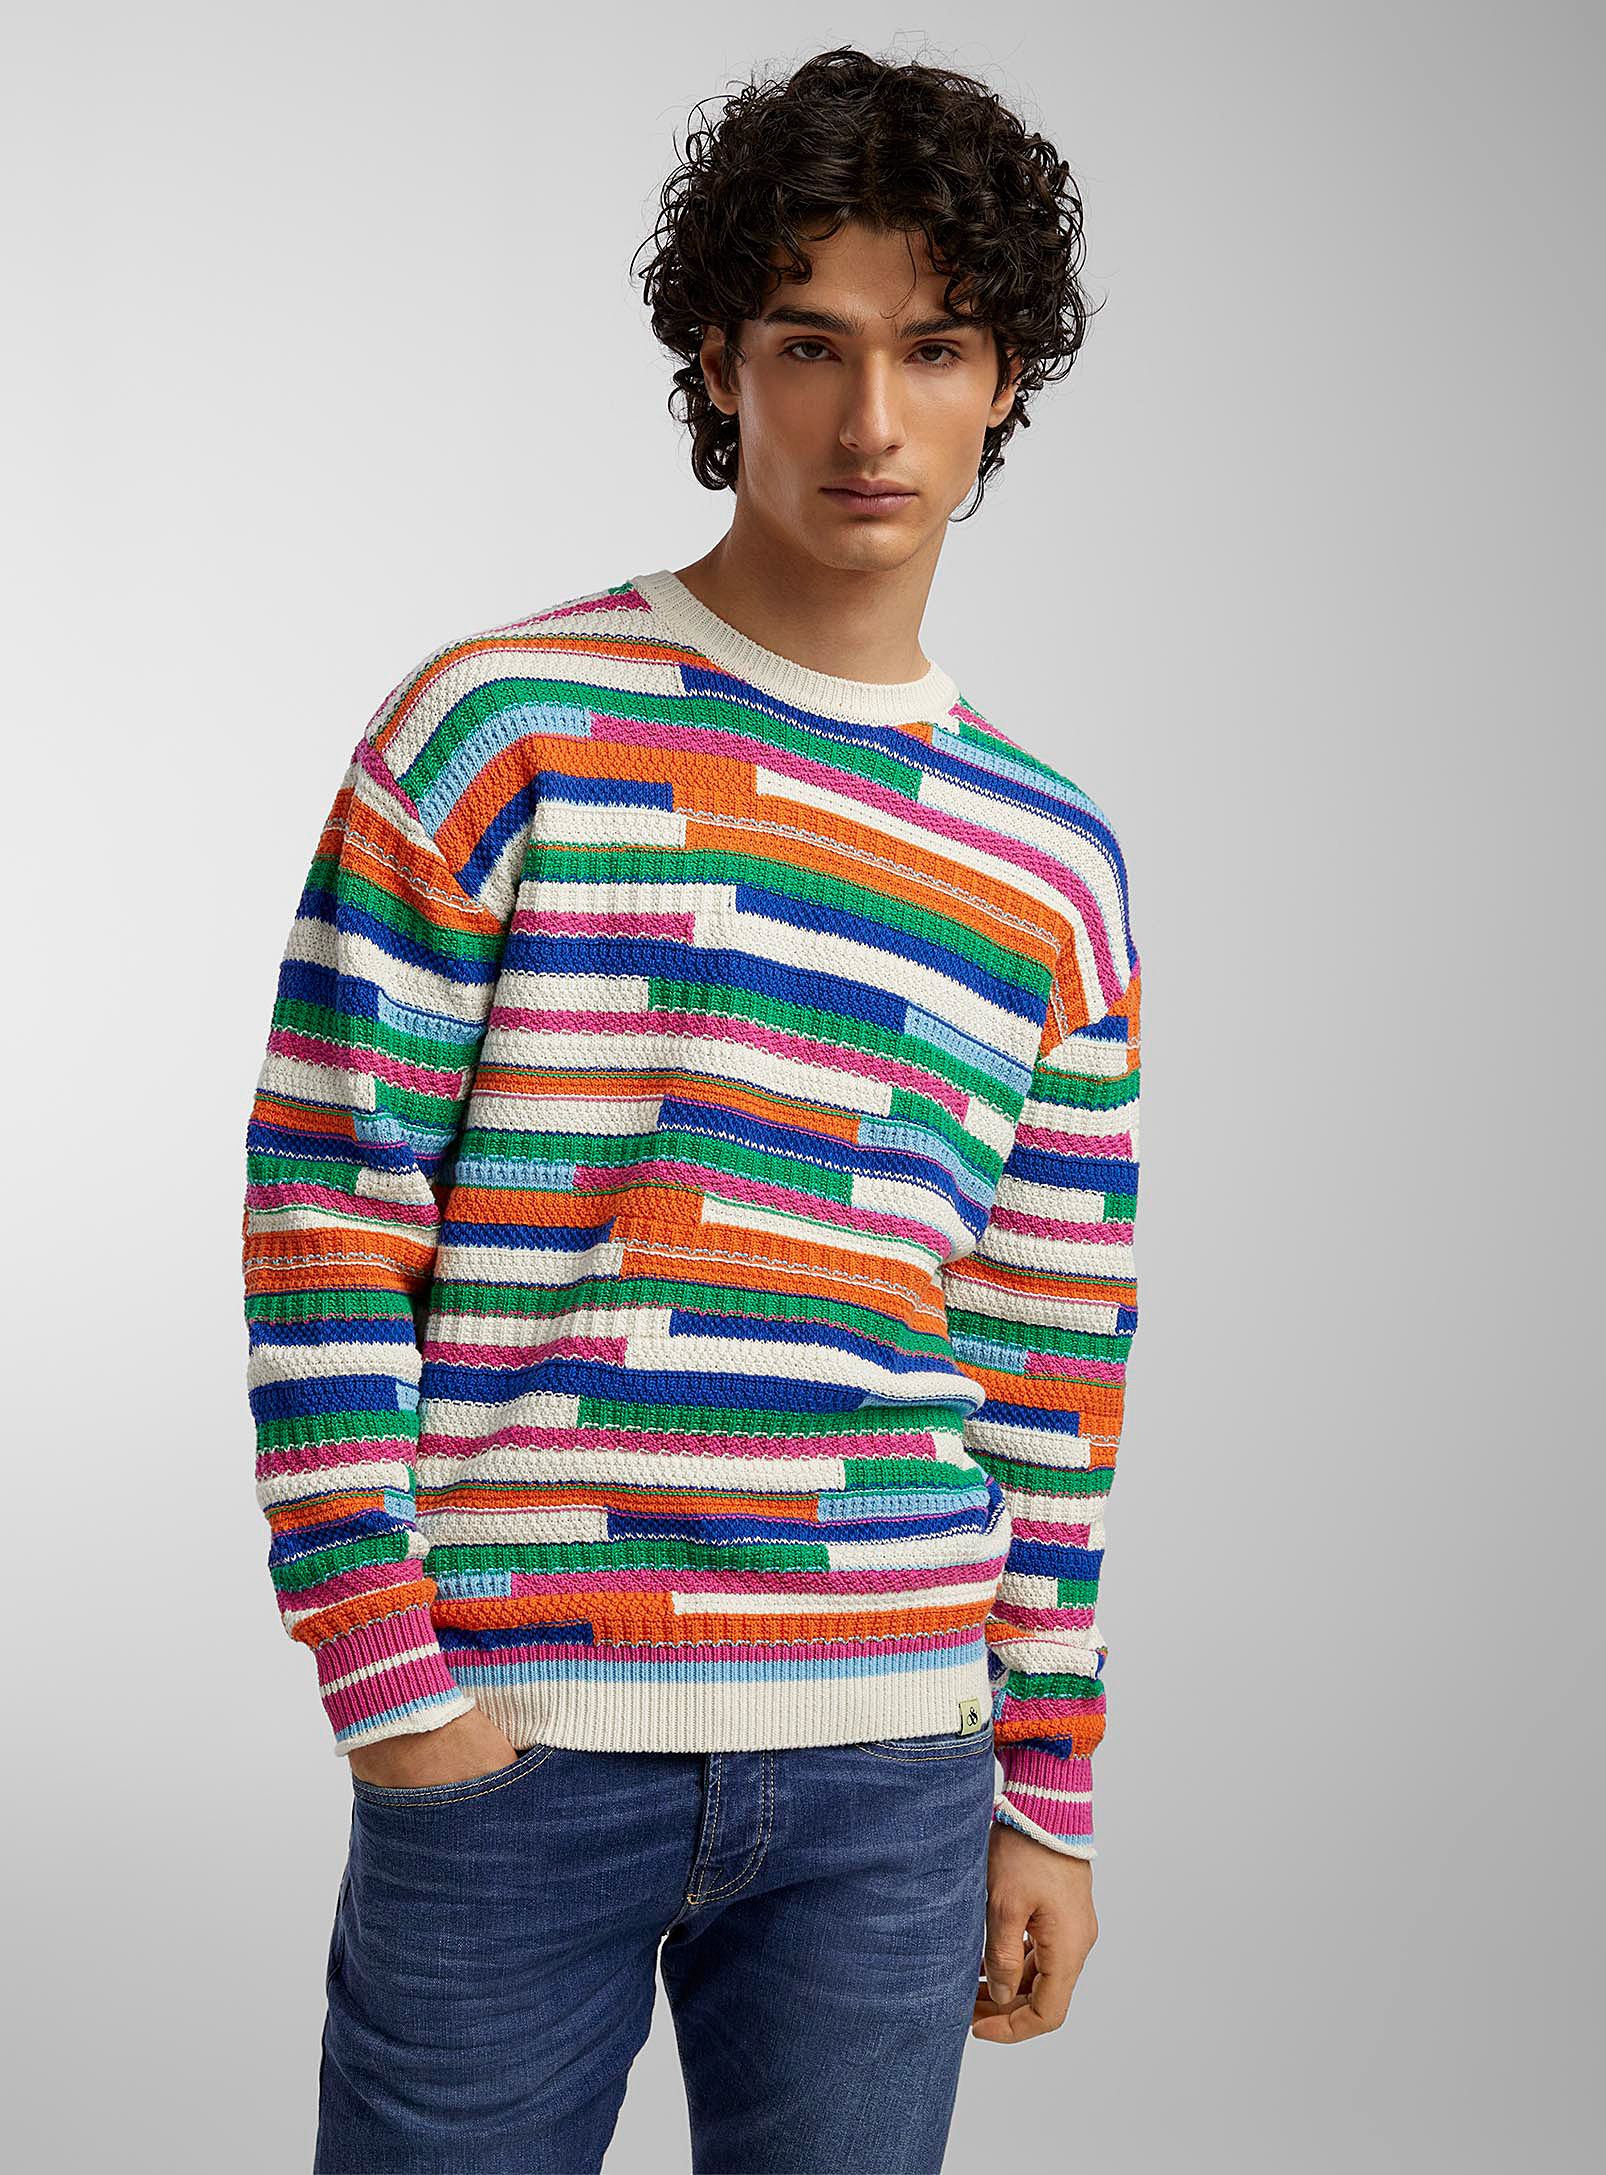 Scotch & Soda - Men's Colourful mixed-stitch sweater